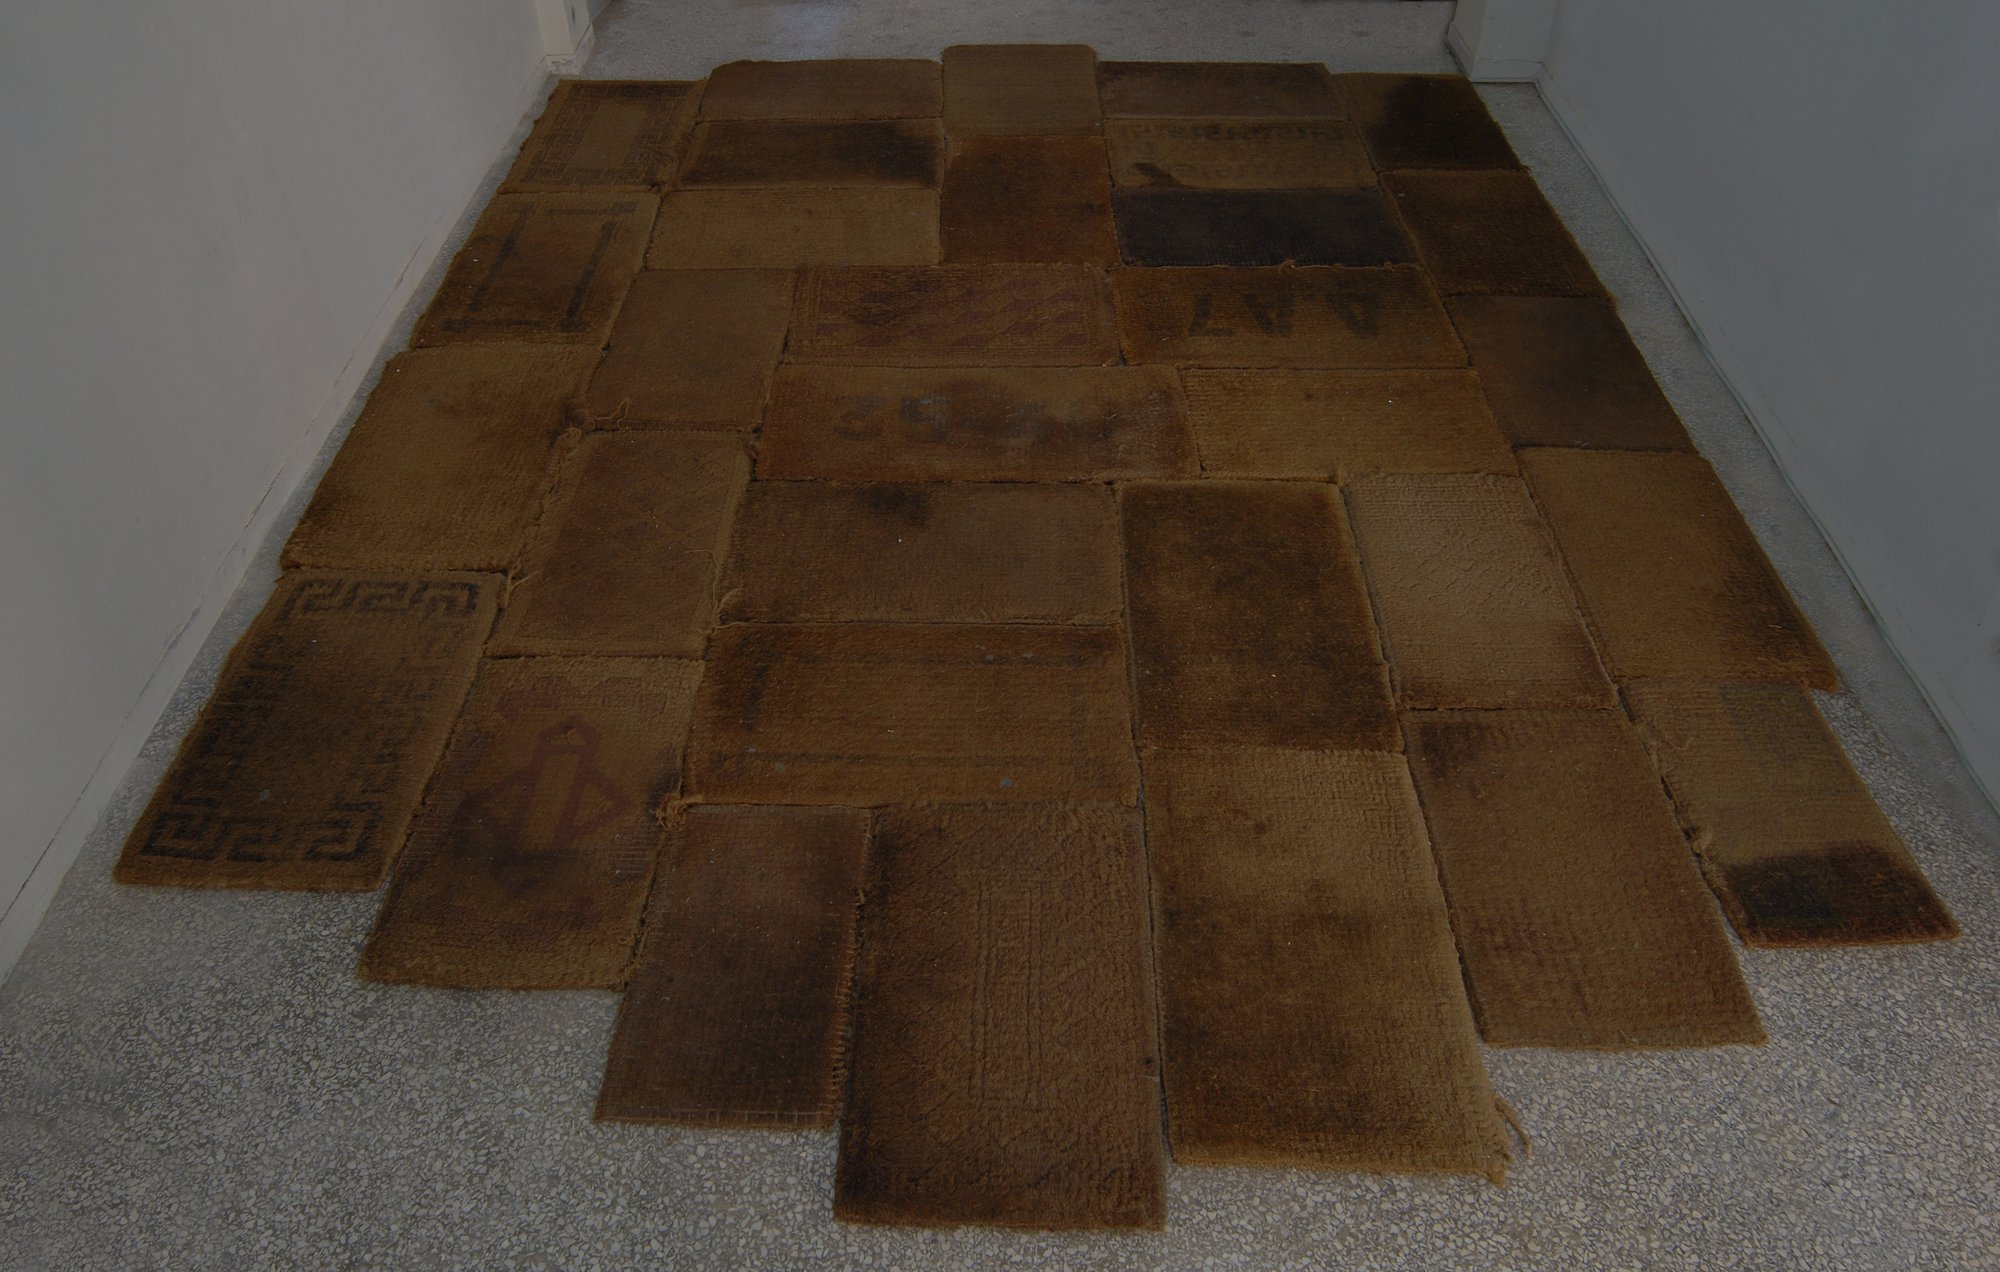 Eftihis Patsourakis, Skin, 32 exchanged sisal door mats from Athens, 500 x 400 cm (196 7/8 x 157 1/2 in), 2010